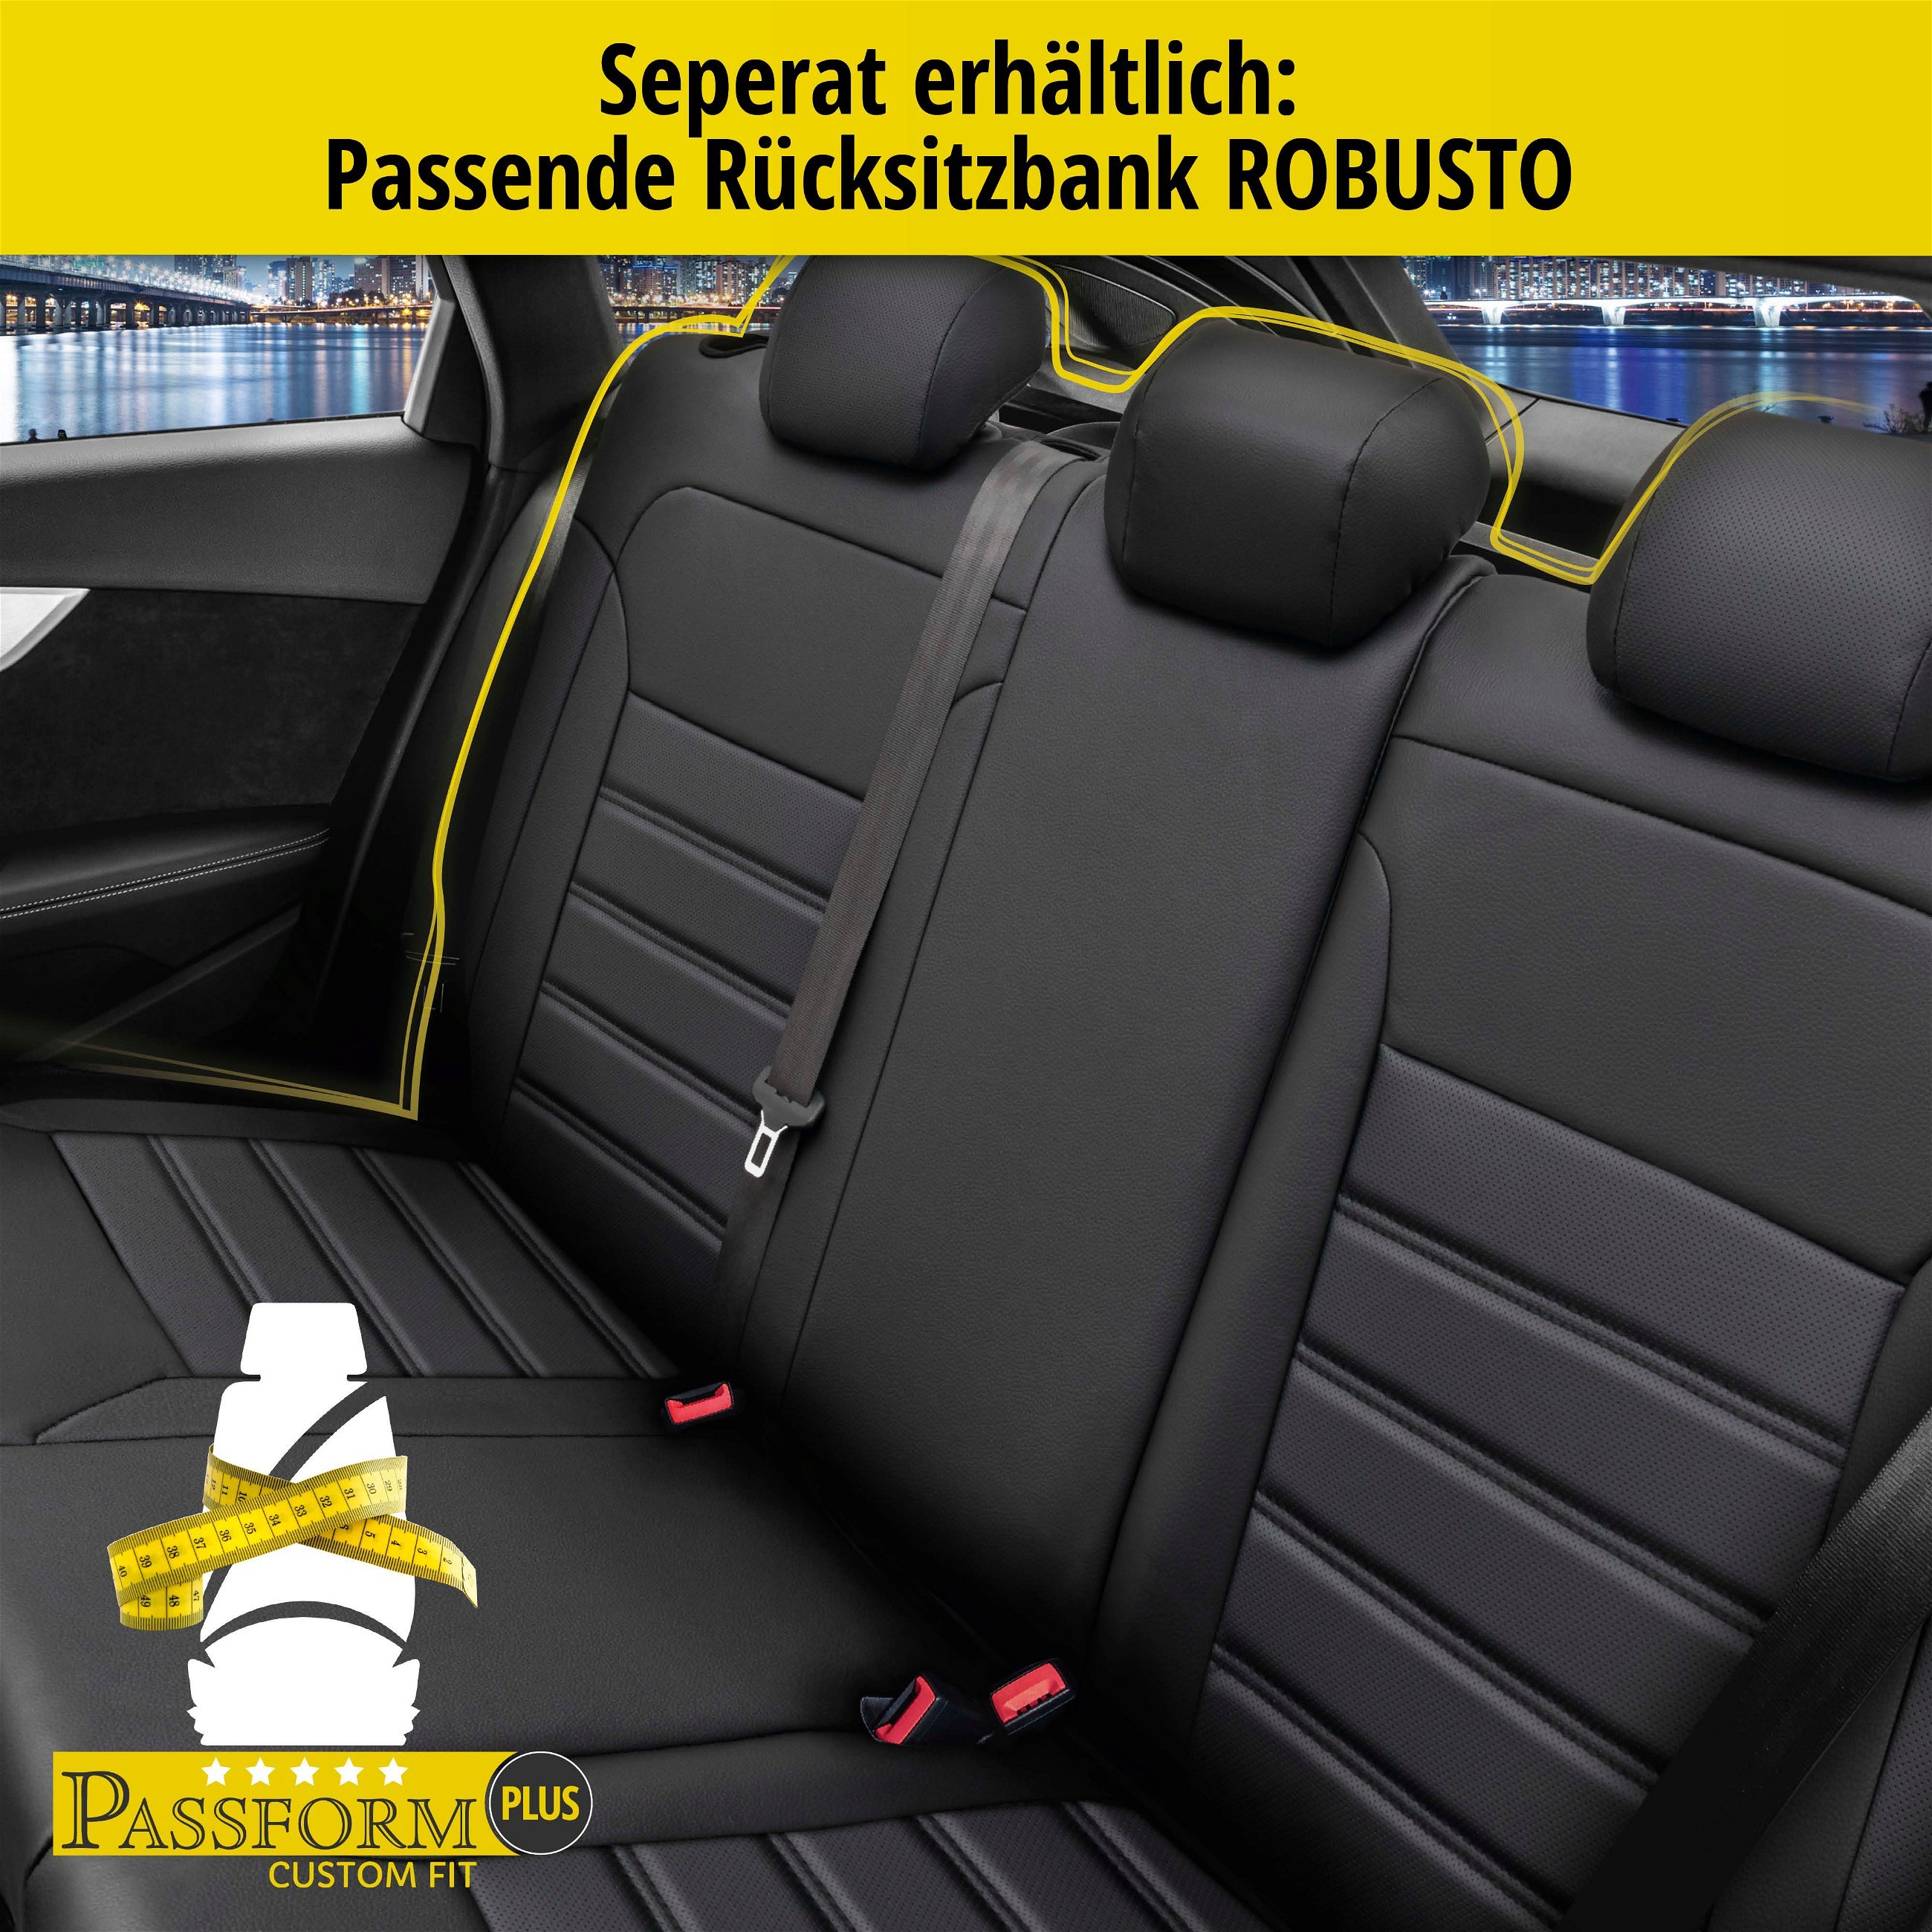 Passform Sitzbezug Robusto für VW Golf 7 Trendline 08/2012-03/2021, 2 Einzelsitzbezüge für Normalsitze